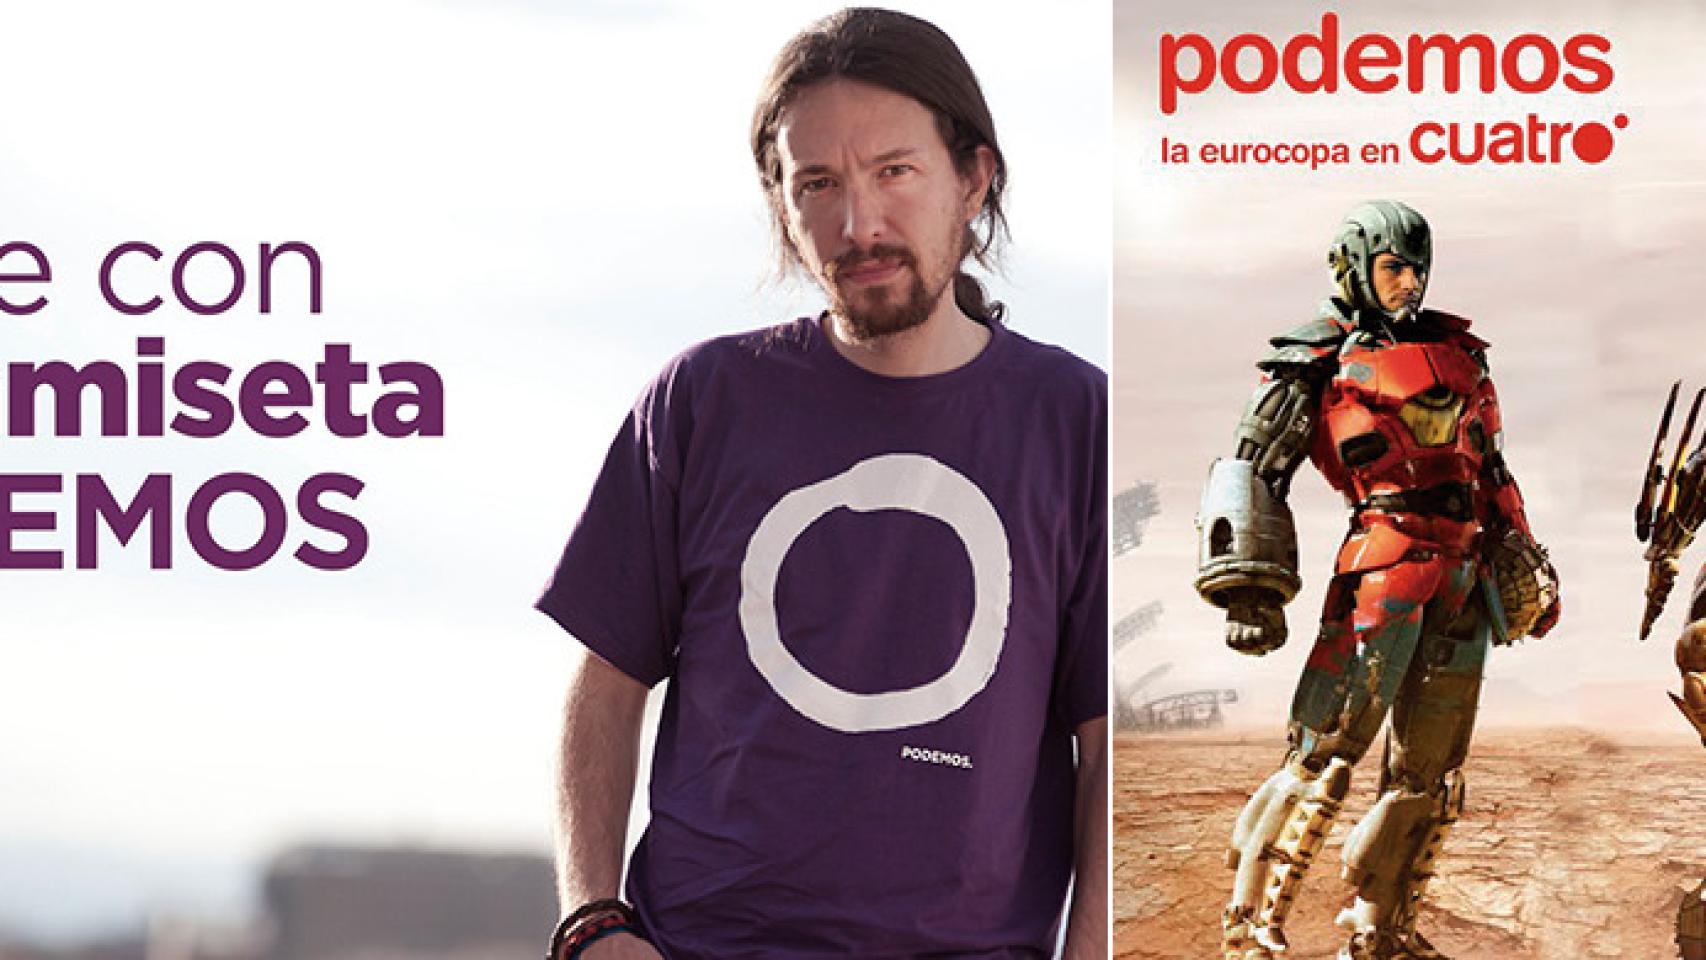 Fin del conflicto: la marca Podemos ya es de Pablo Iglesias (y de Mediaset España)